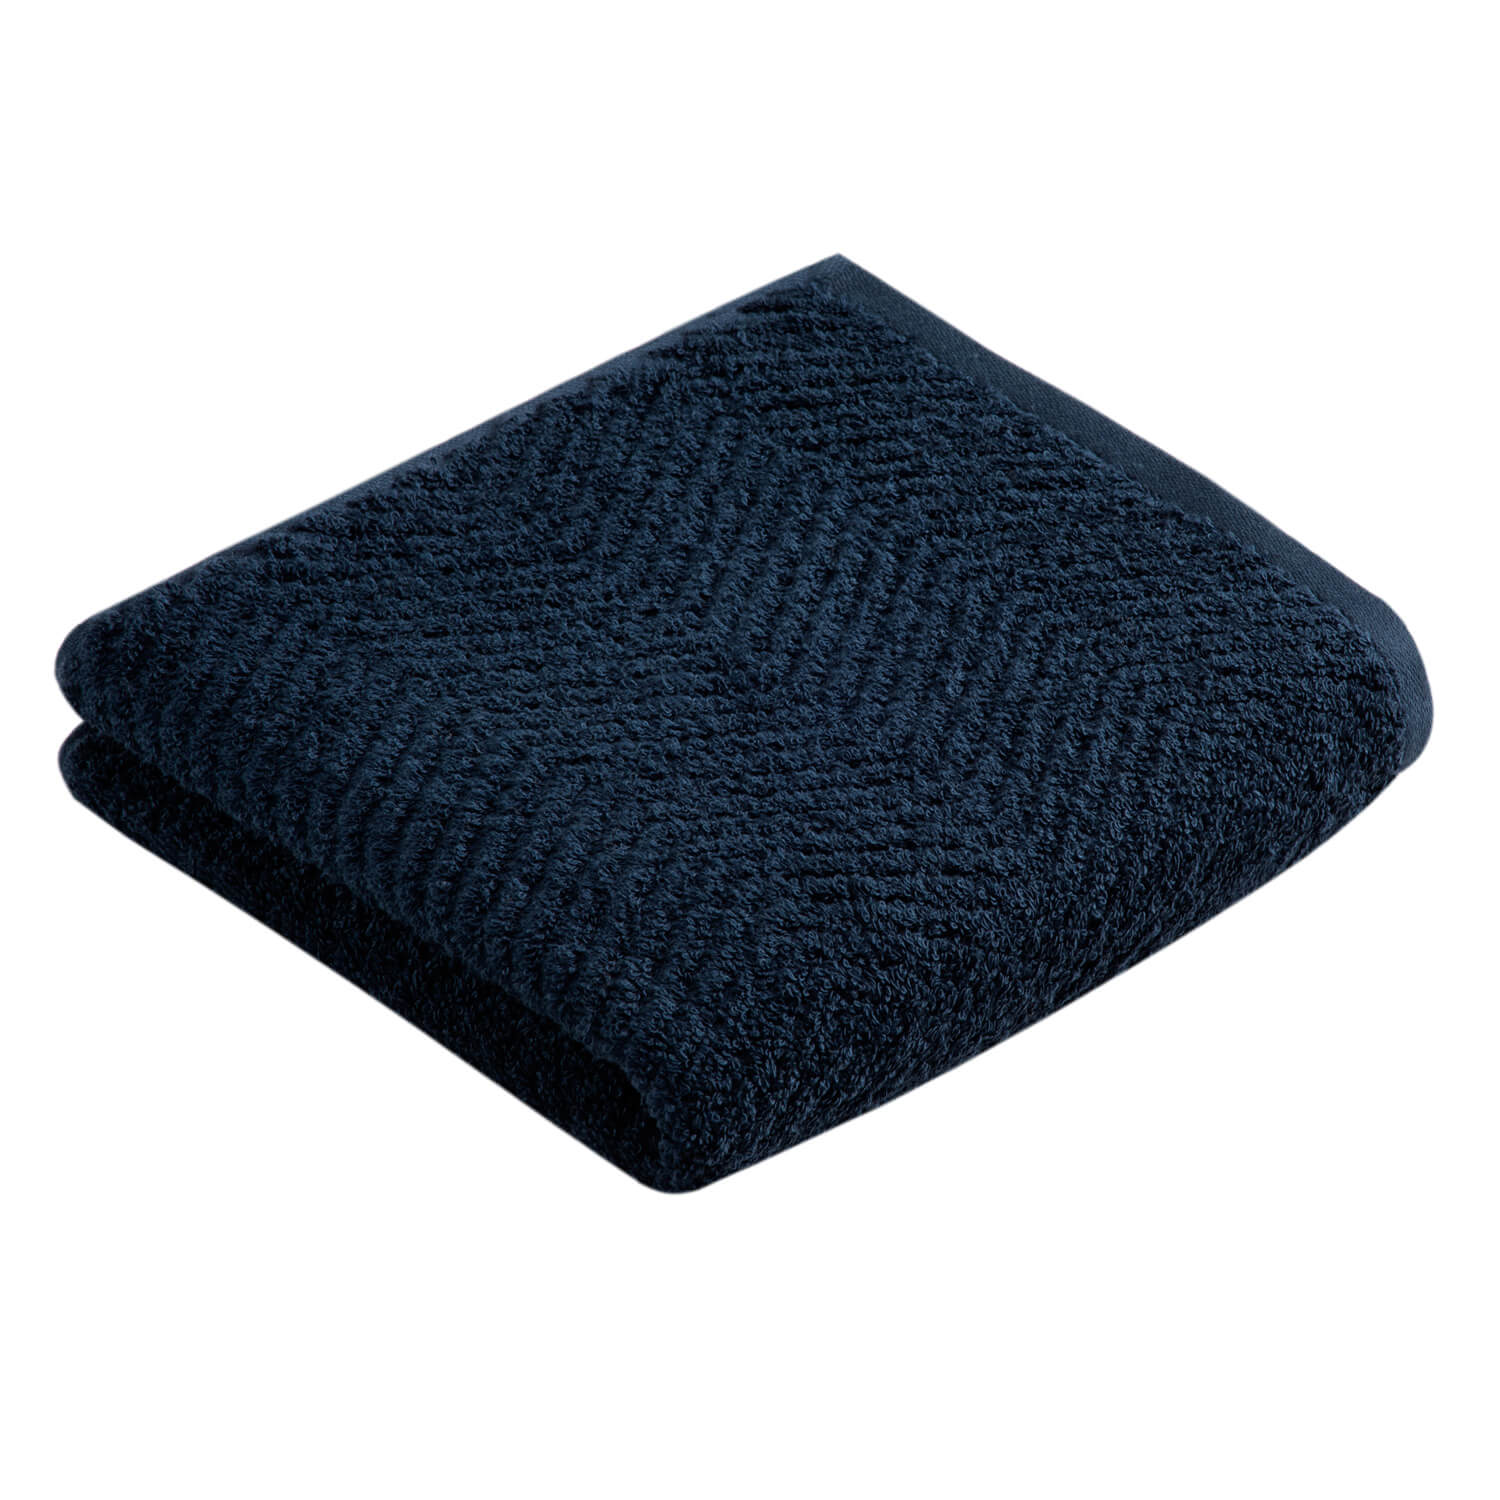 Vossen Dusk Towel - Marine Blau 1 Shaws Department Stores